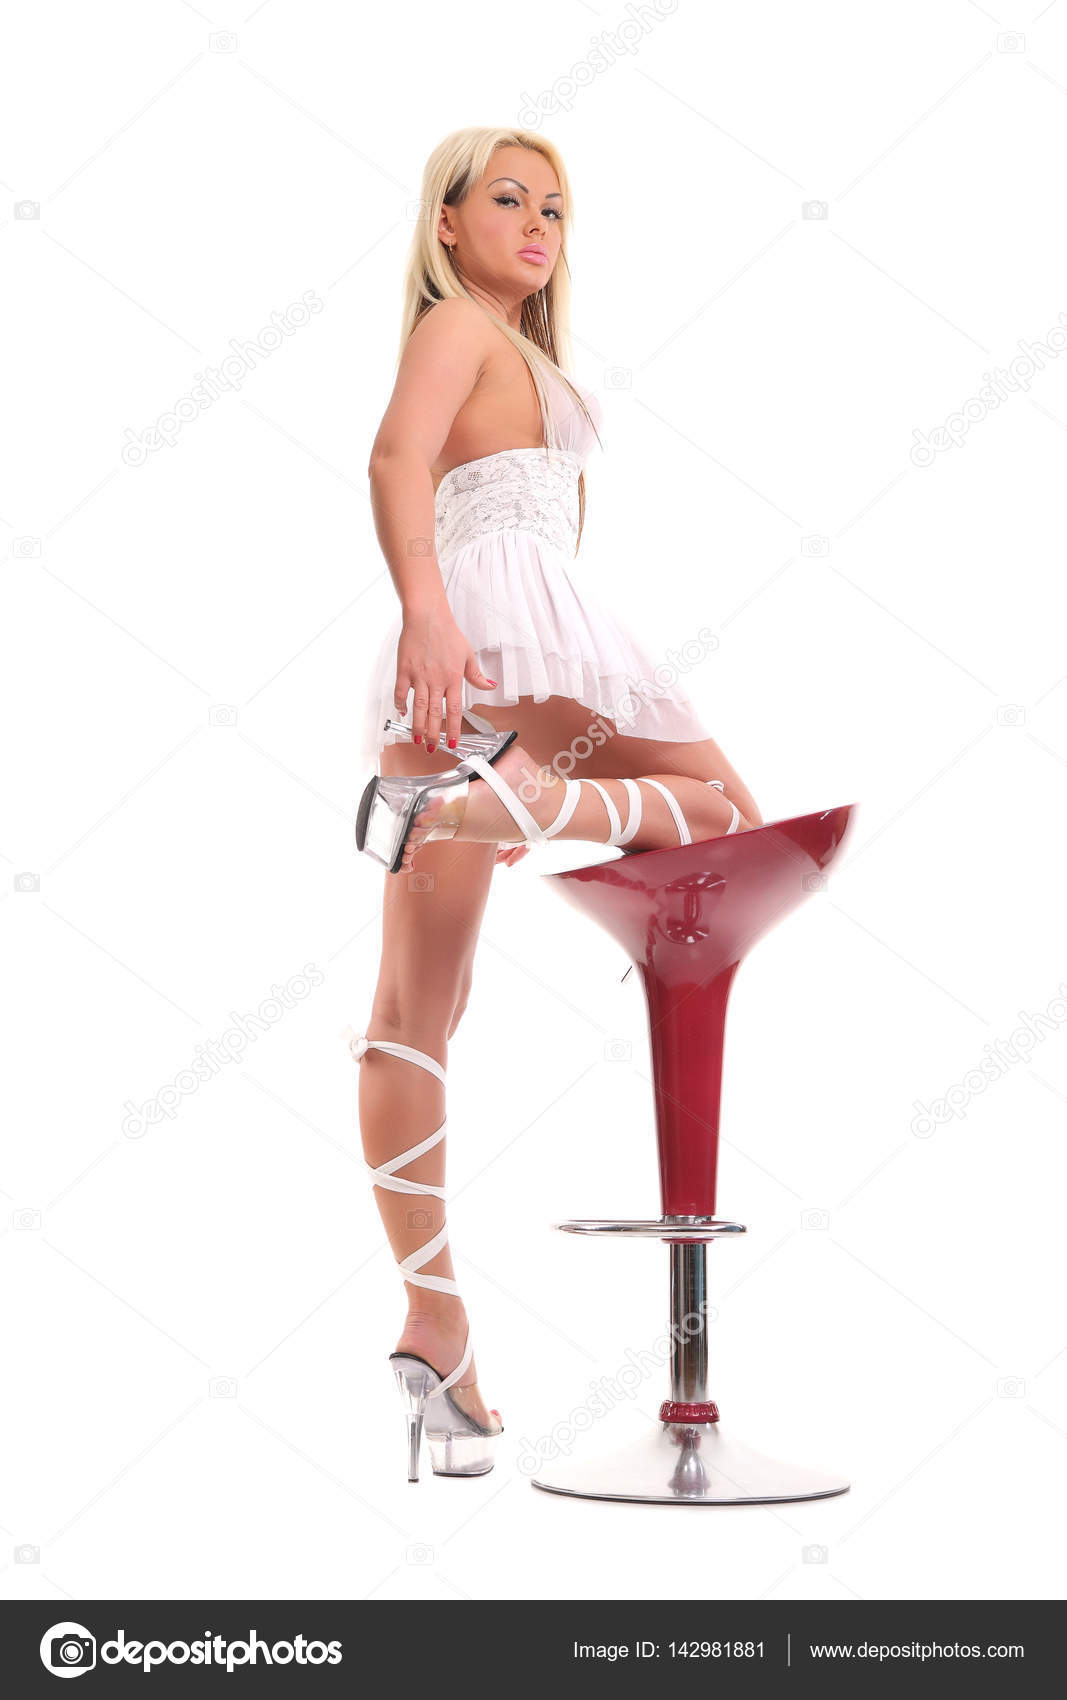 https://st3.depositphotos.com/2970081/14298/i/1600/depositphotos_142981881-stock-photo-stripper-girl-in-a-white.jpg